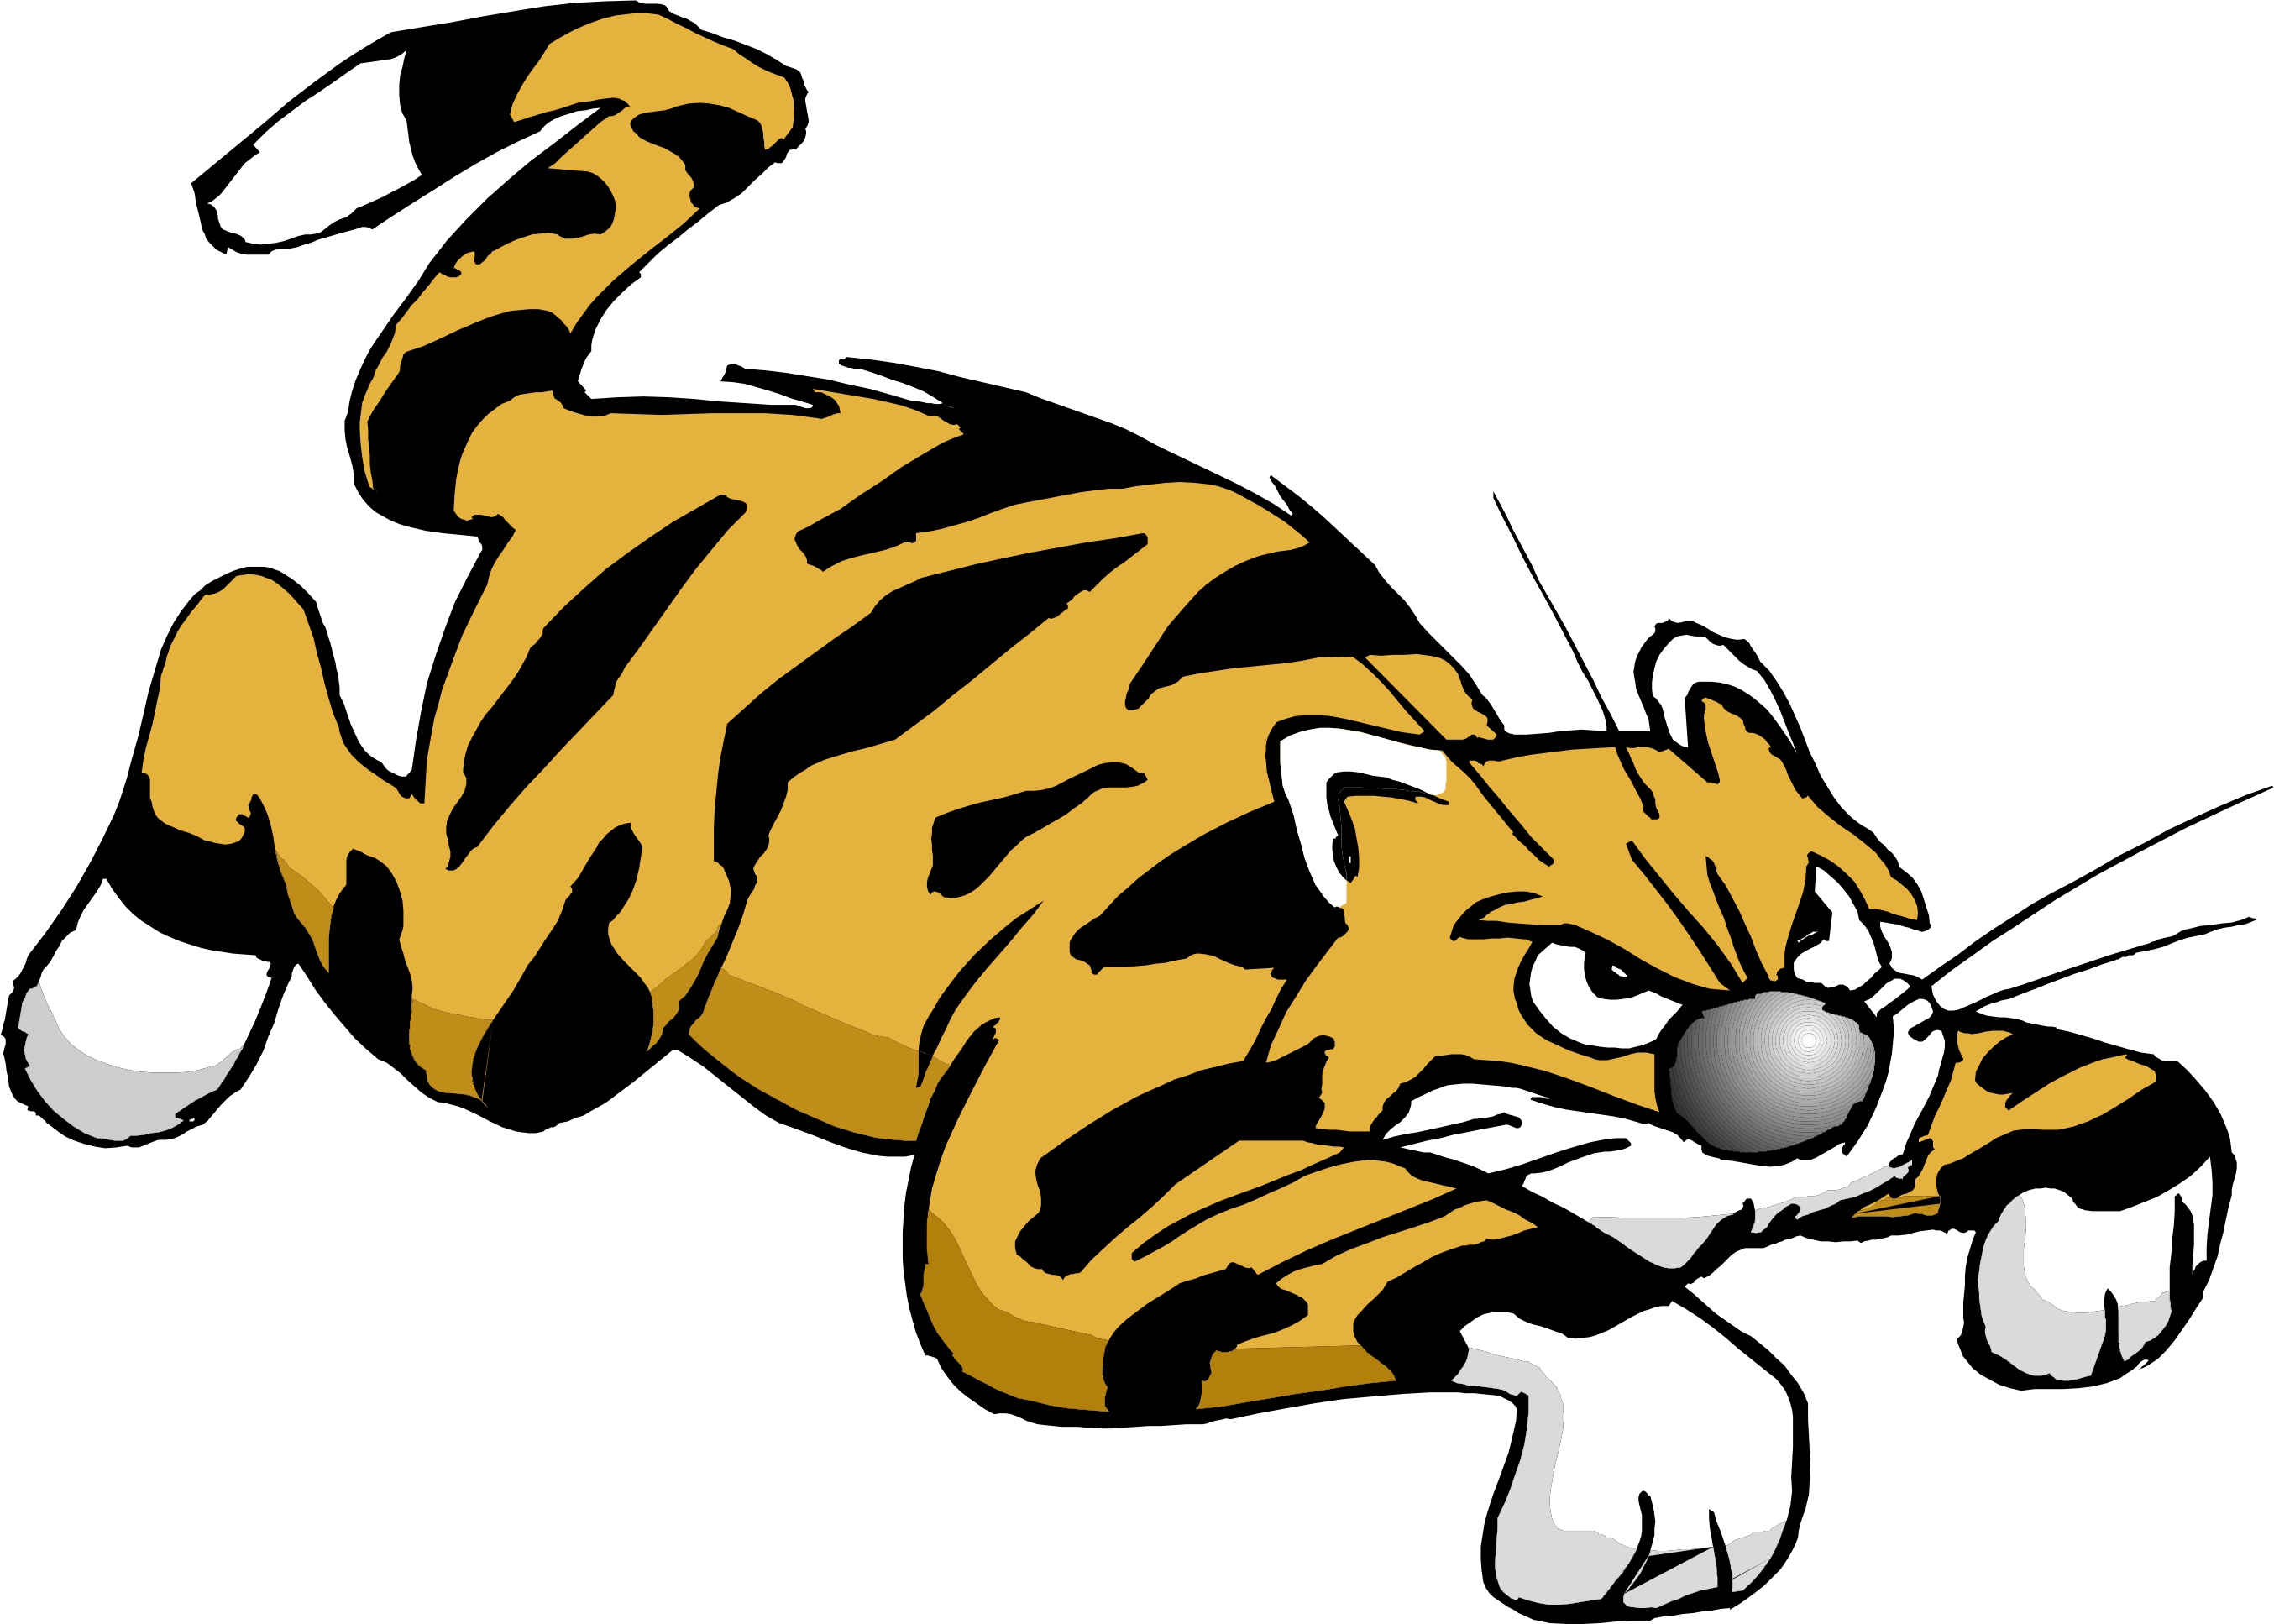 Tiger Images Cartoon - Desktop Backgrounds